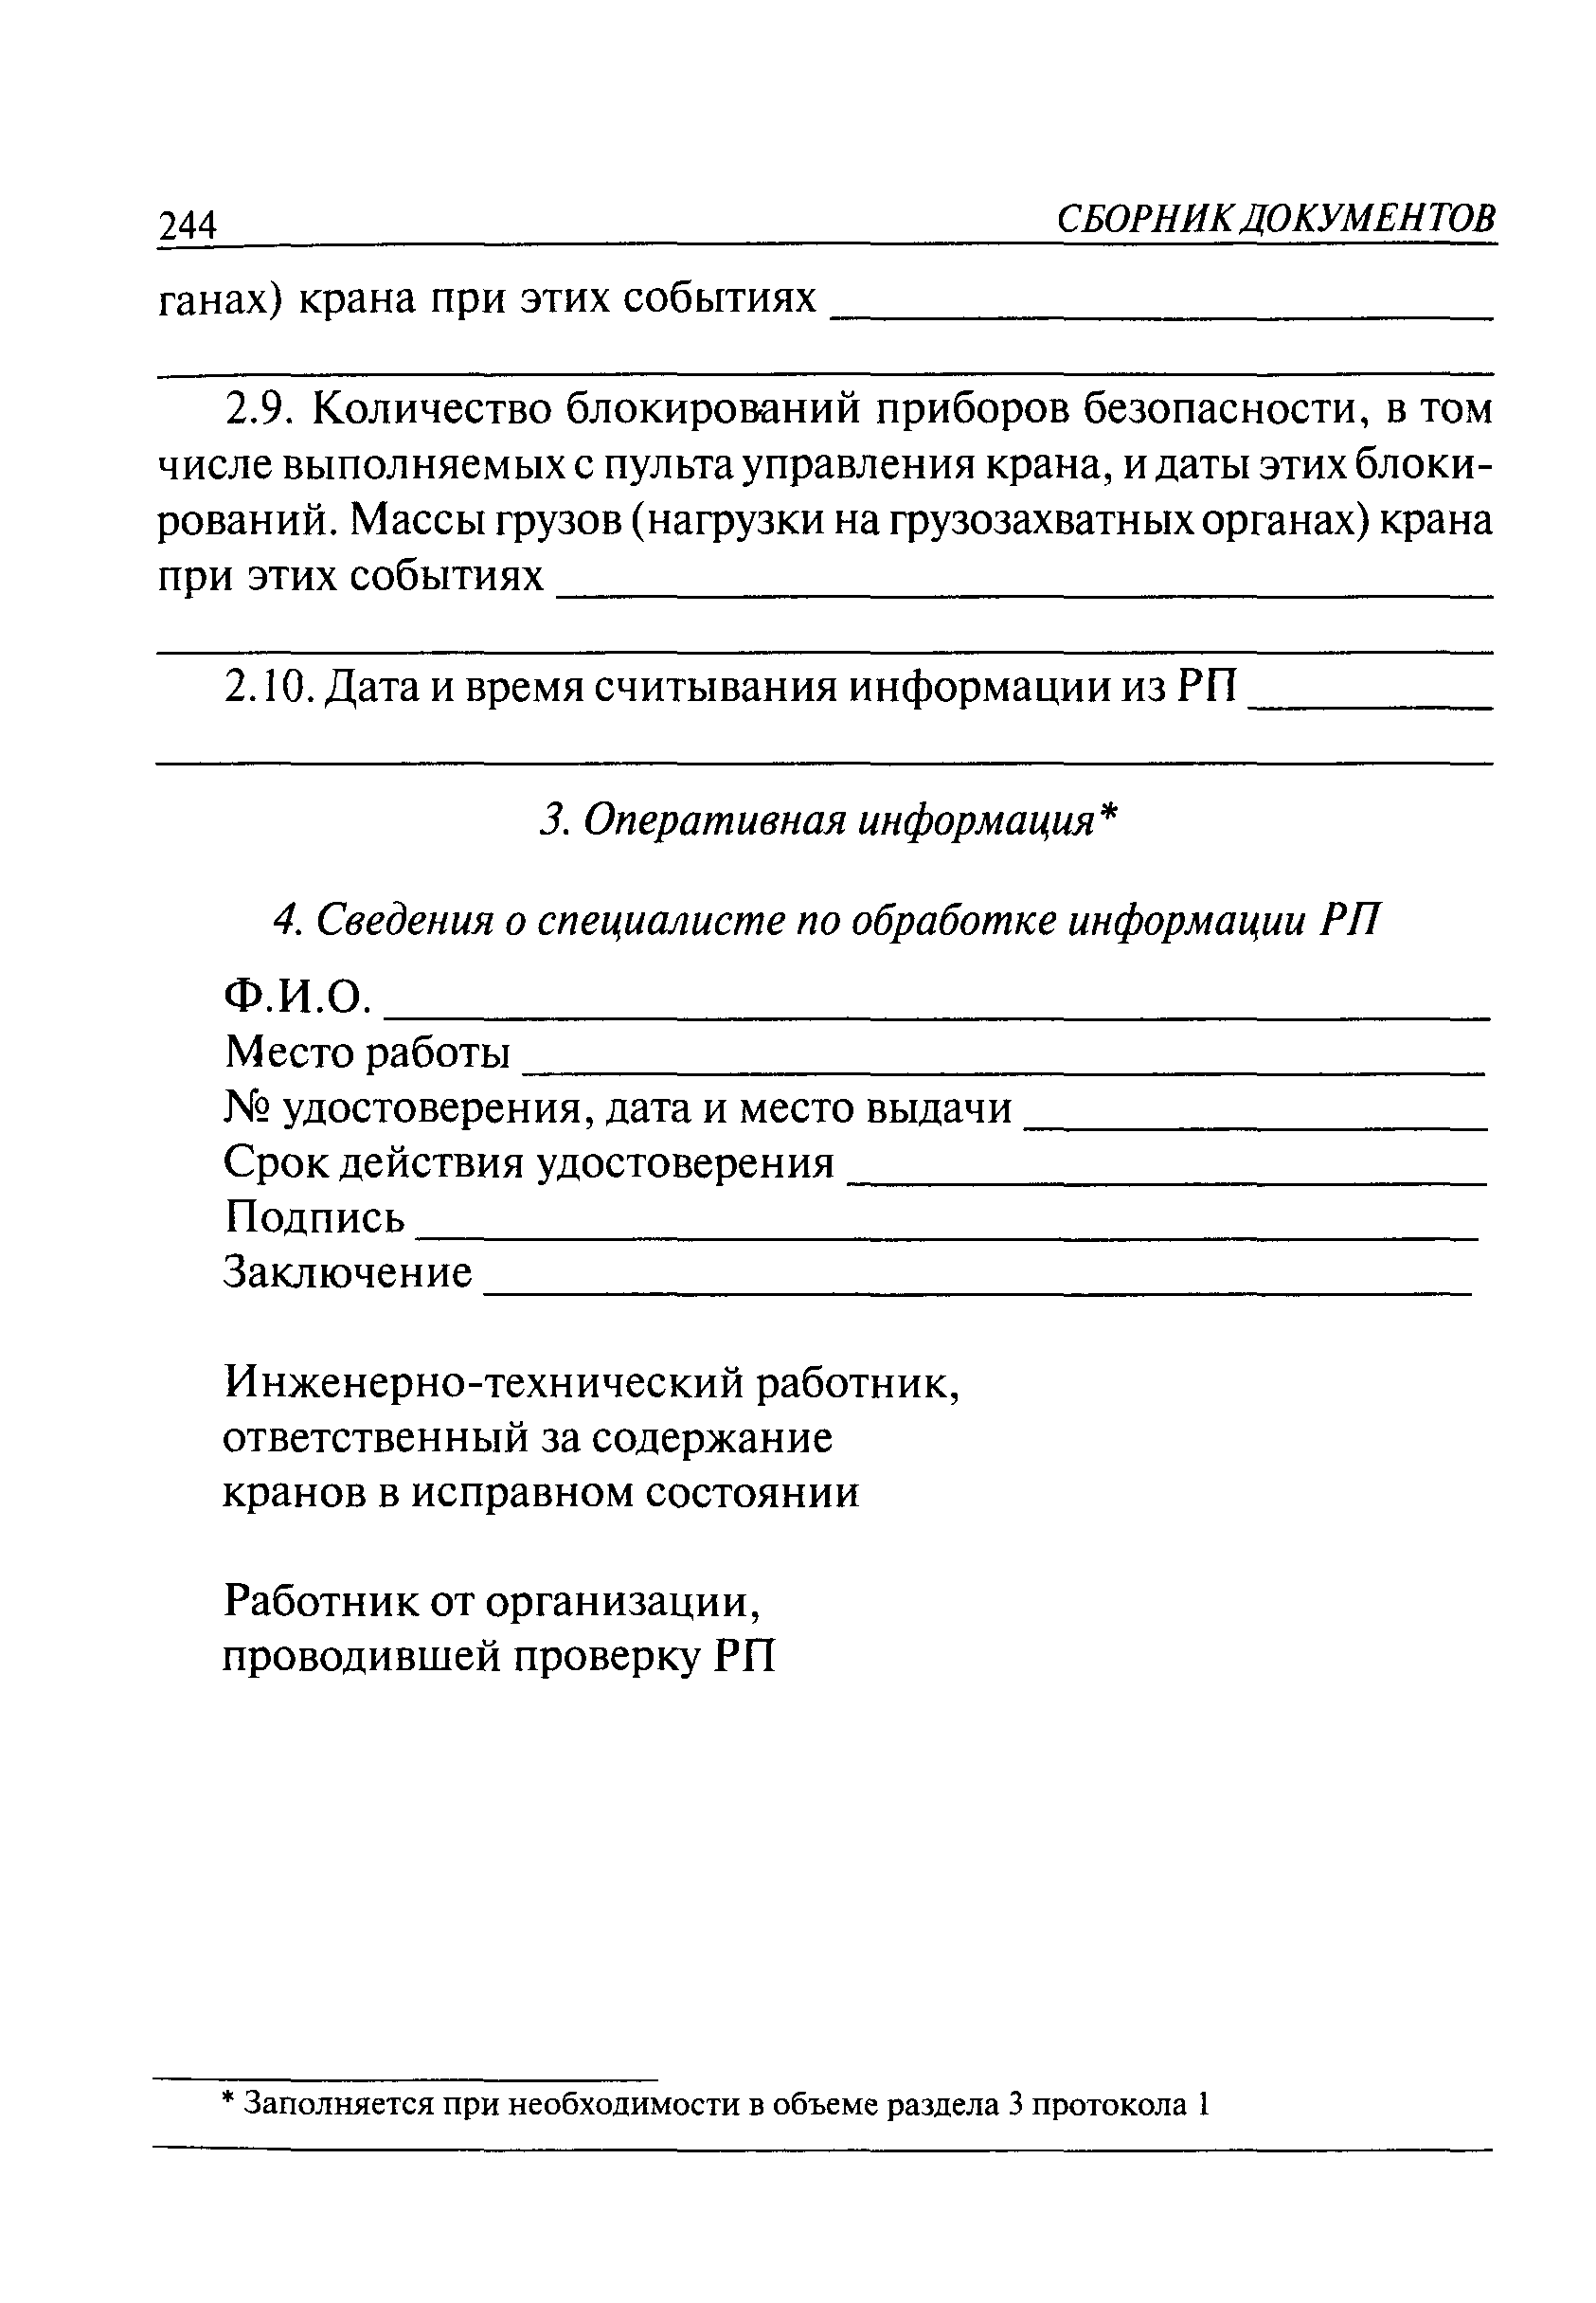 РД СМА-001-03